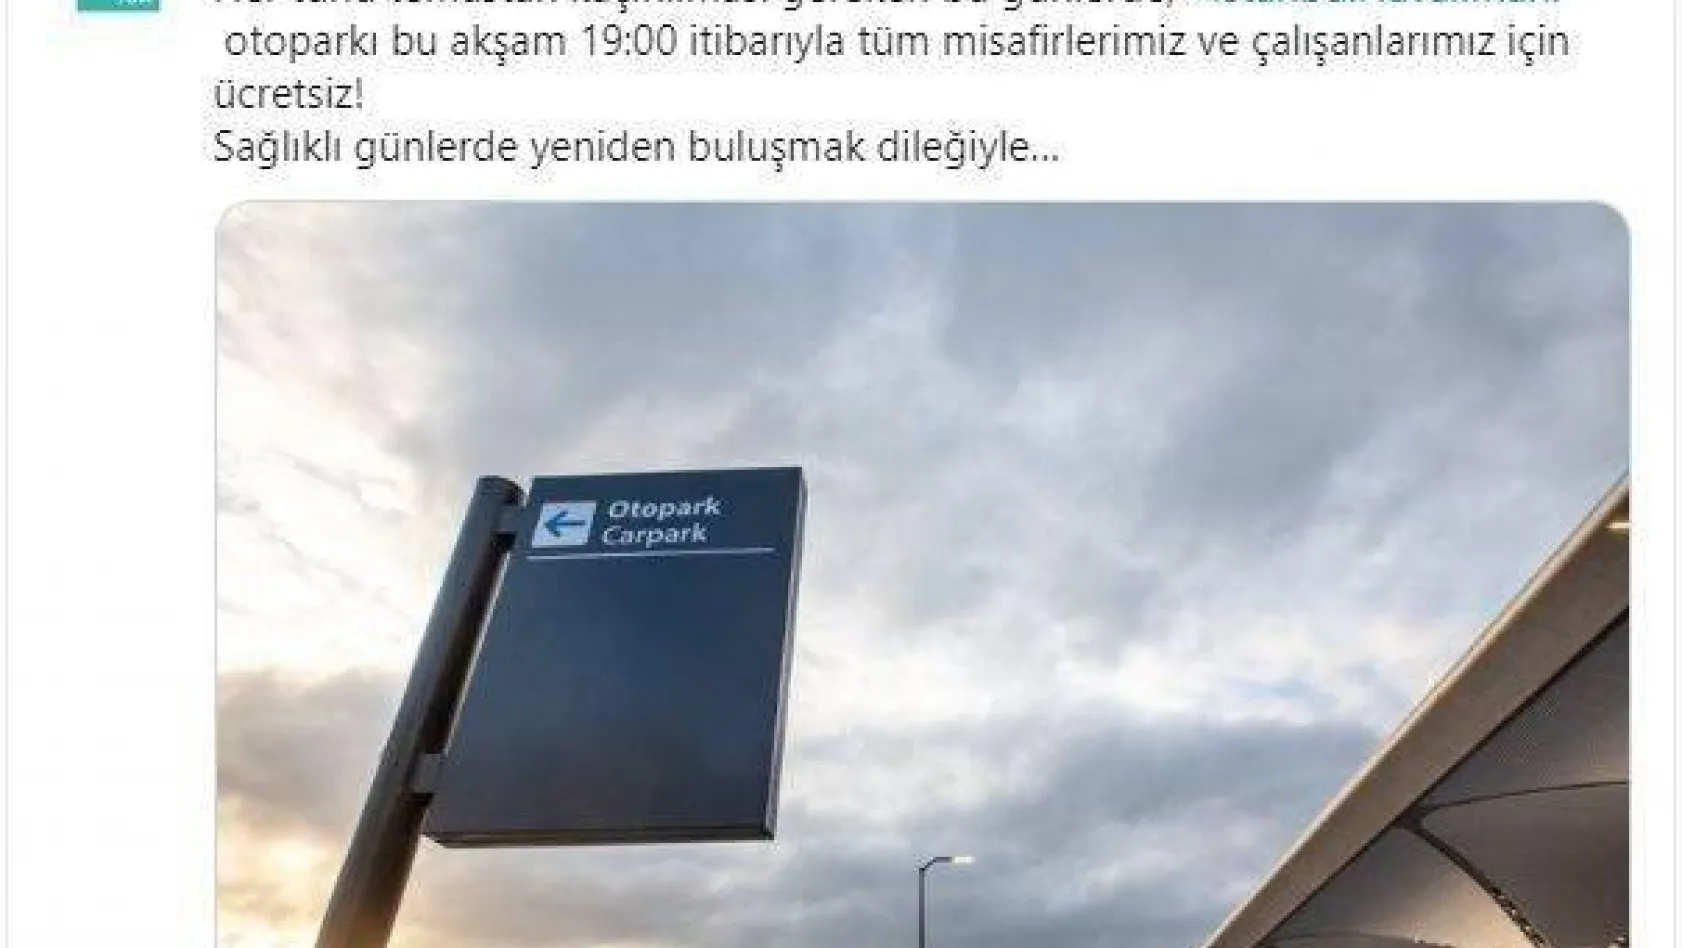 İstanbul Havalimanı'nda otopark ücretsiz oldu